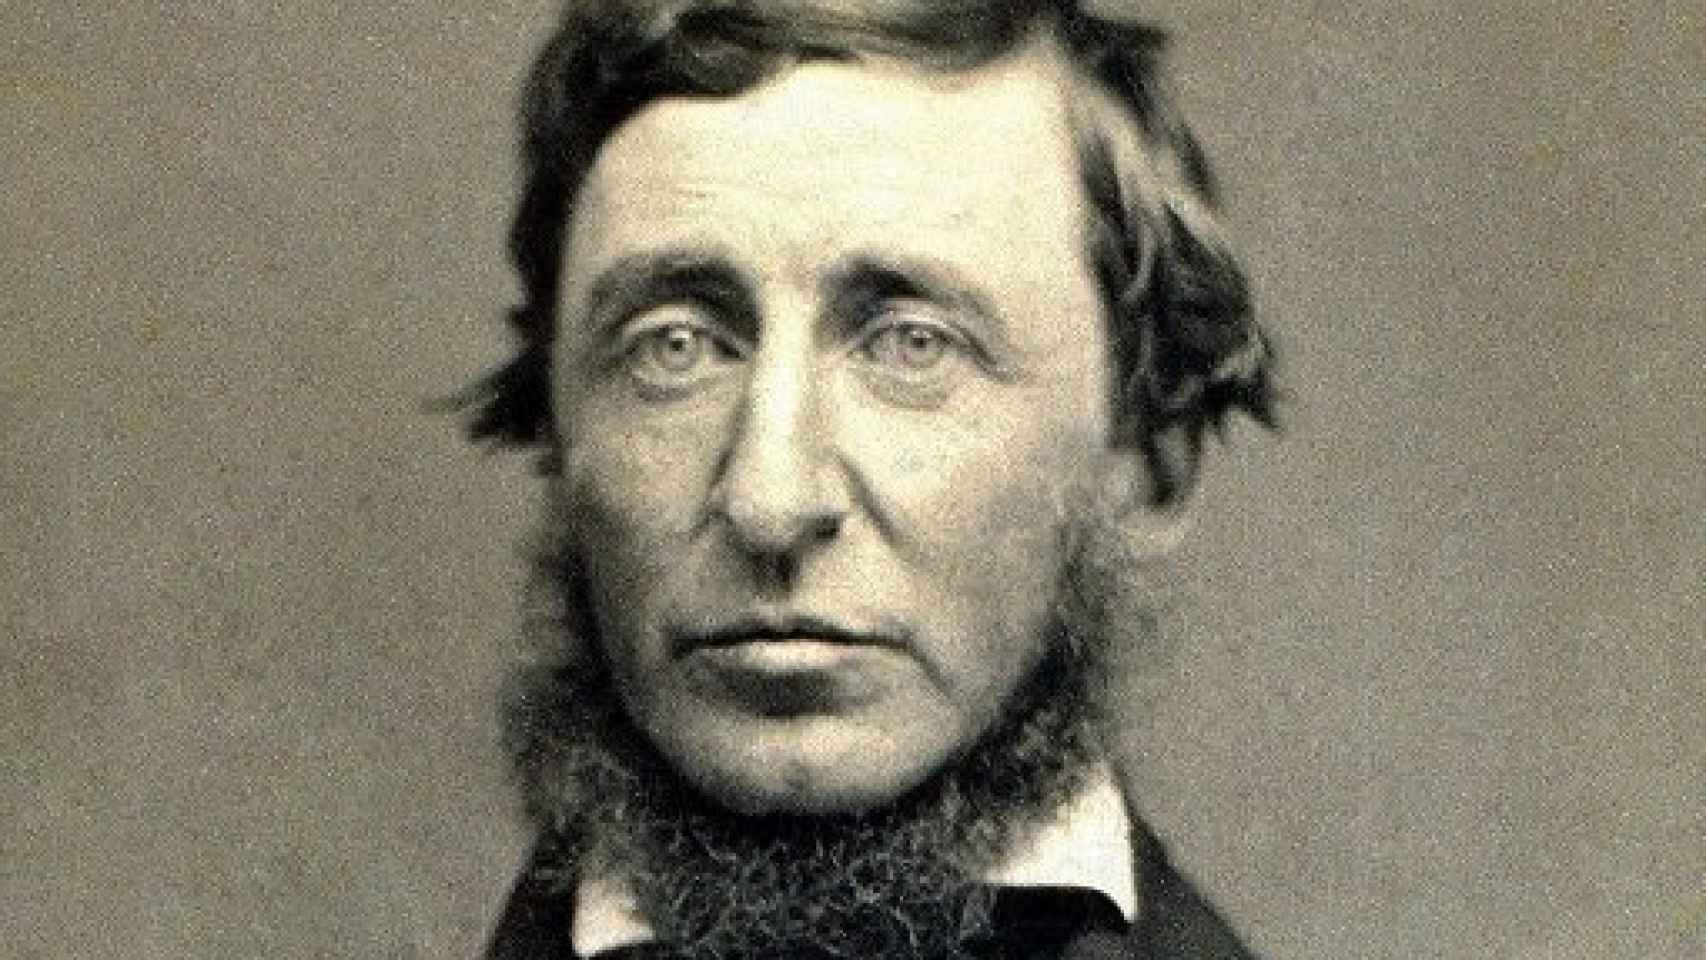 Image: Thoreau. Biografía de un pensador salvaje